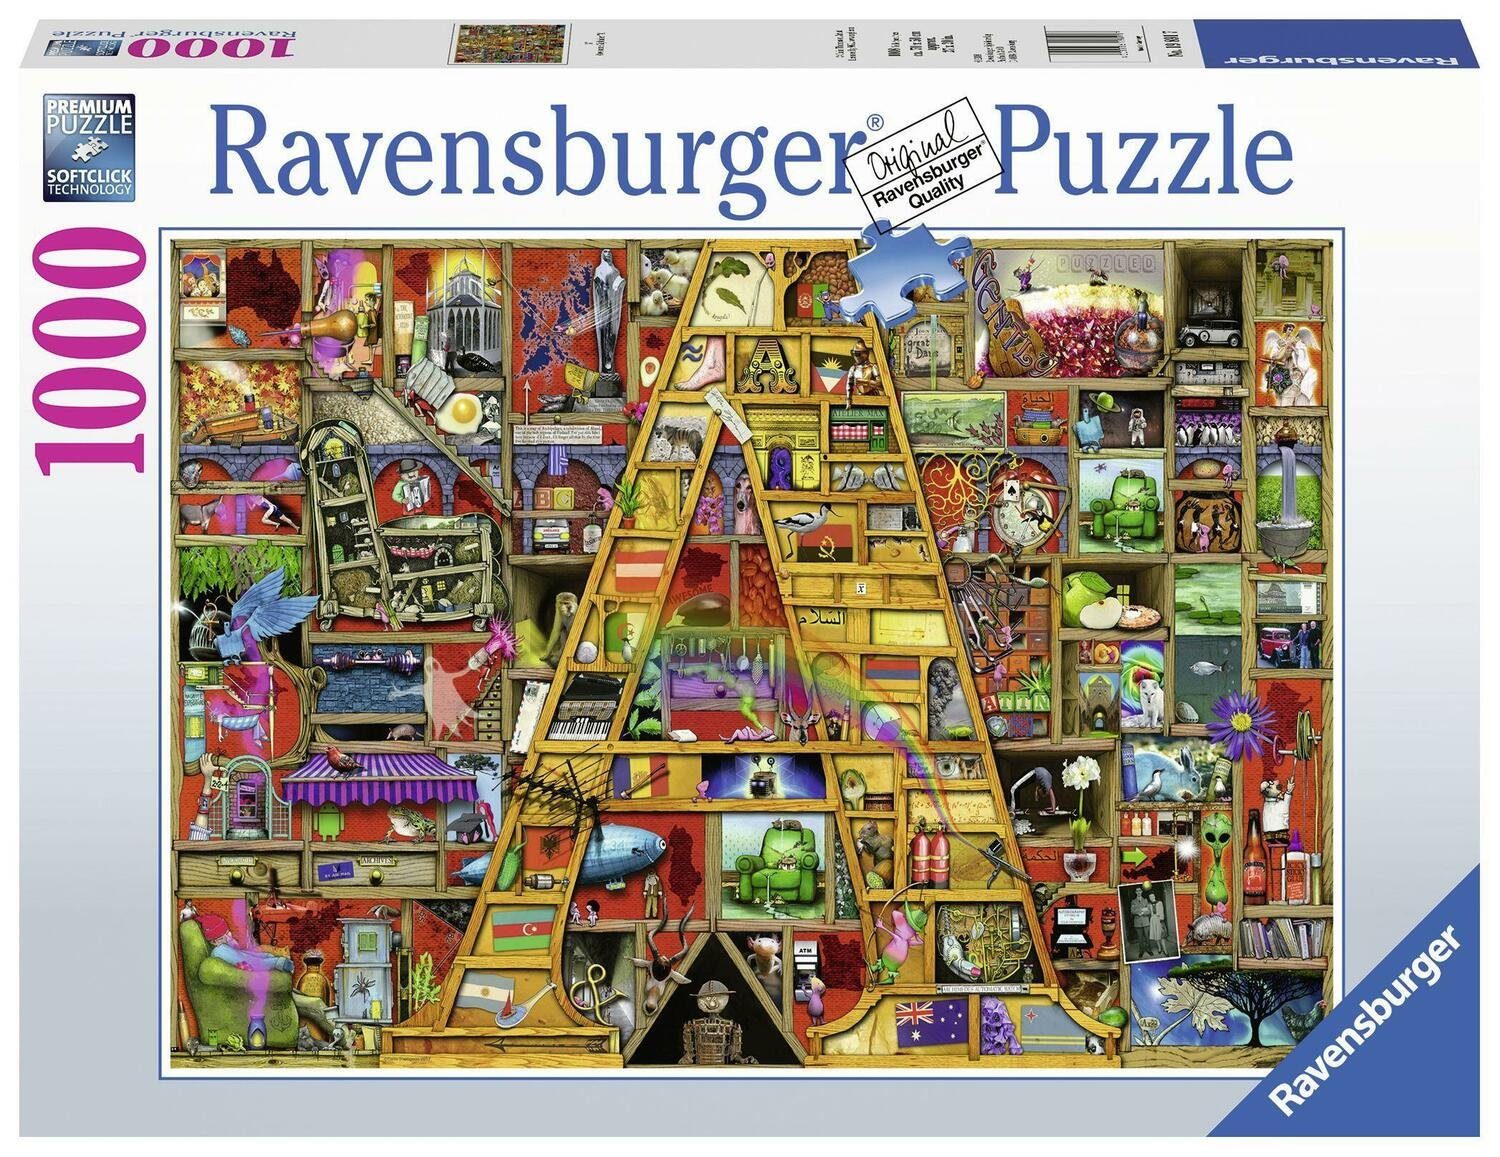 Ravensburger Puzzle Awesome Puzzleteile 1000 1000 "A". Alphabet Puzzle Teile